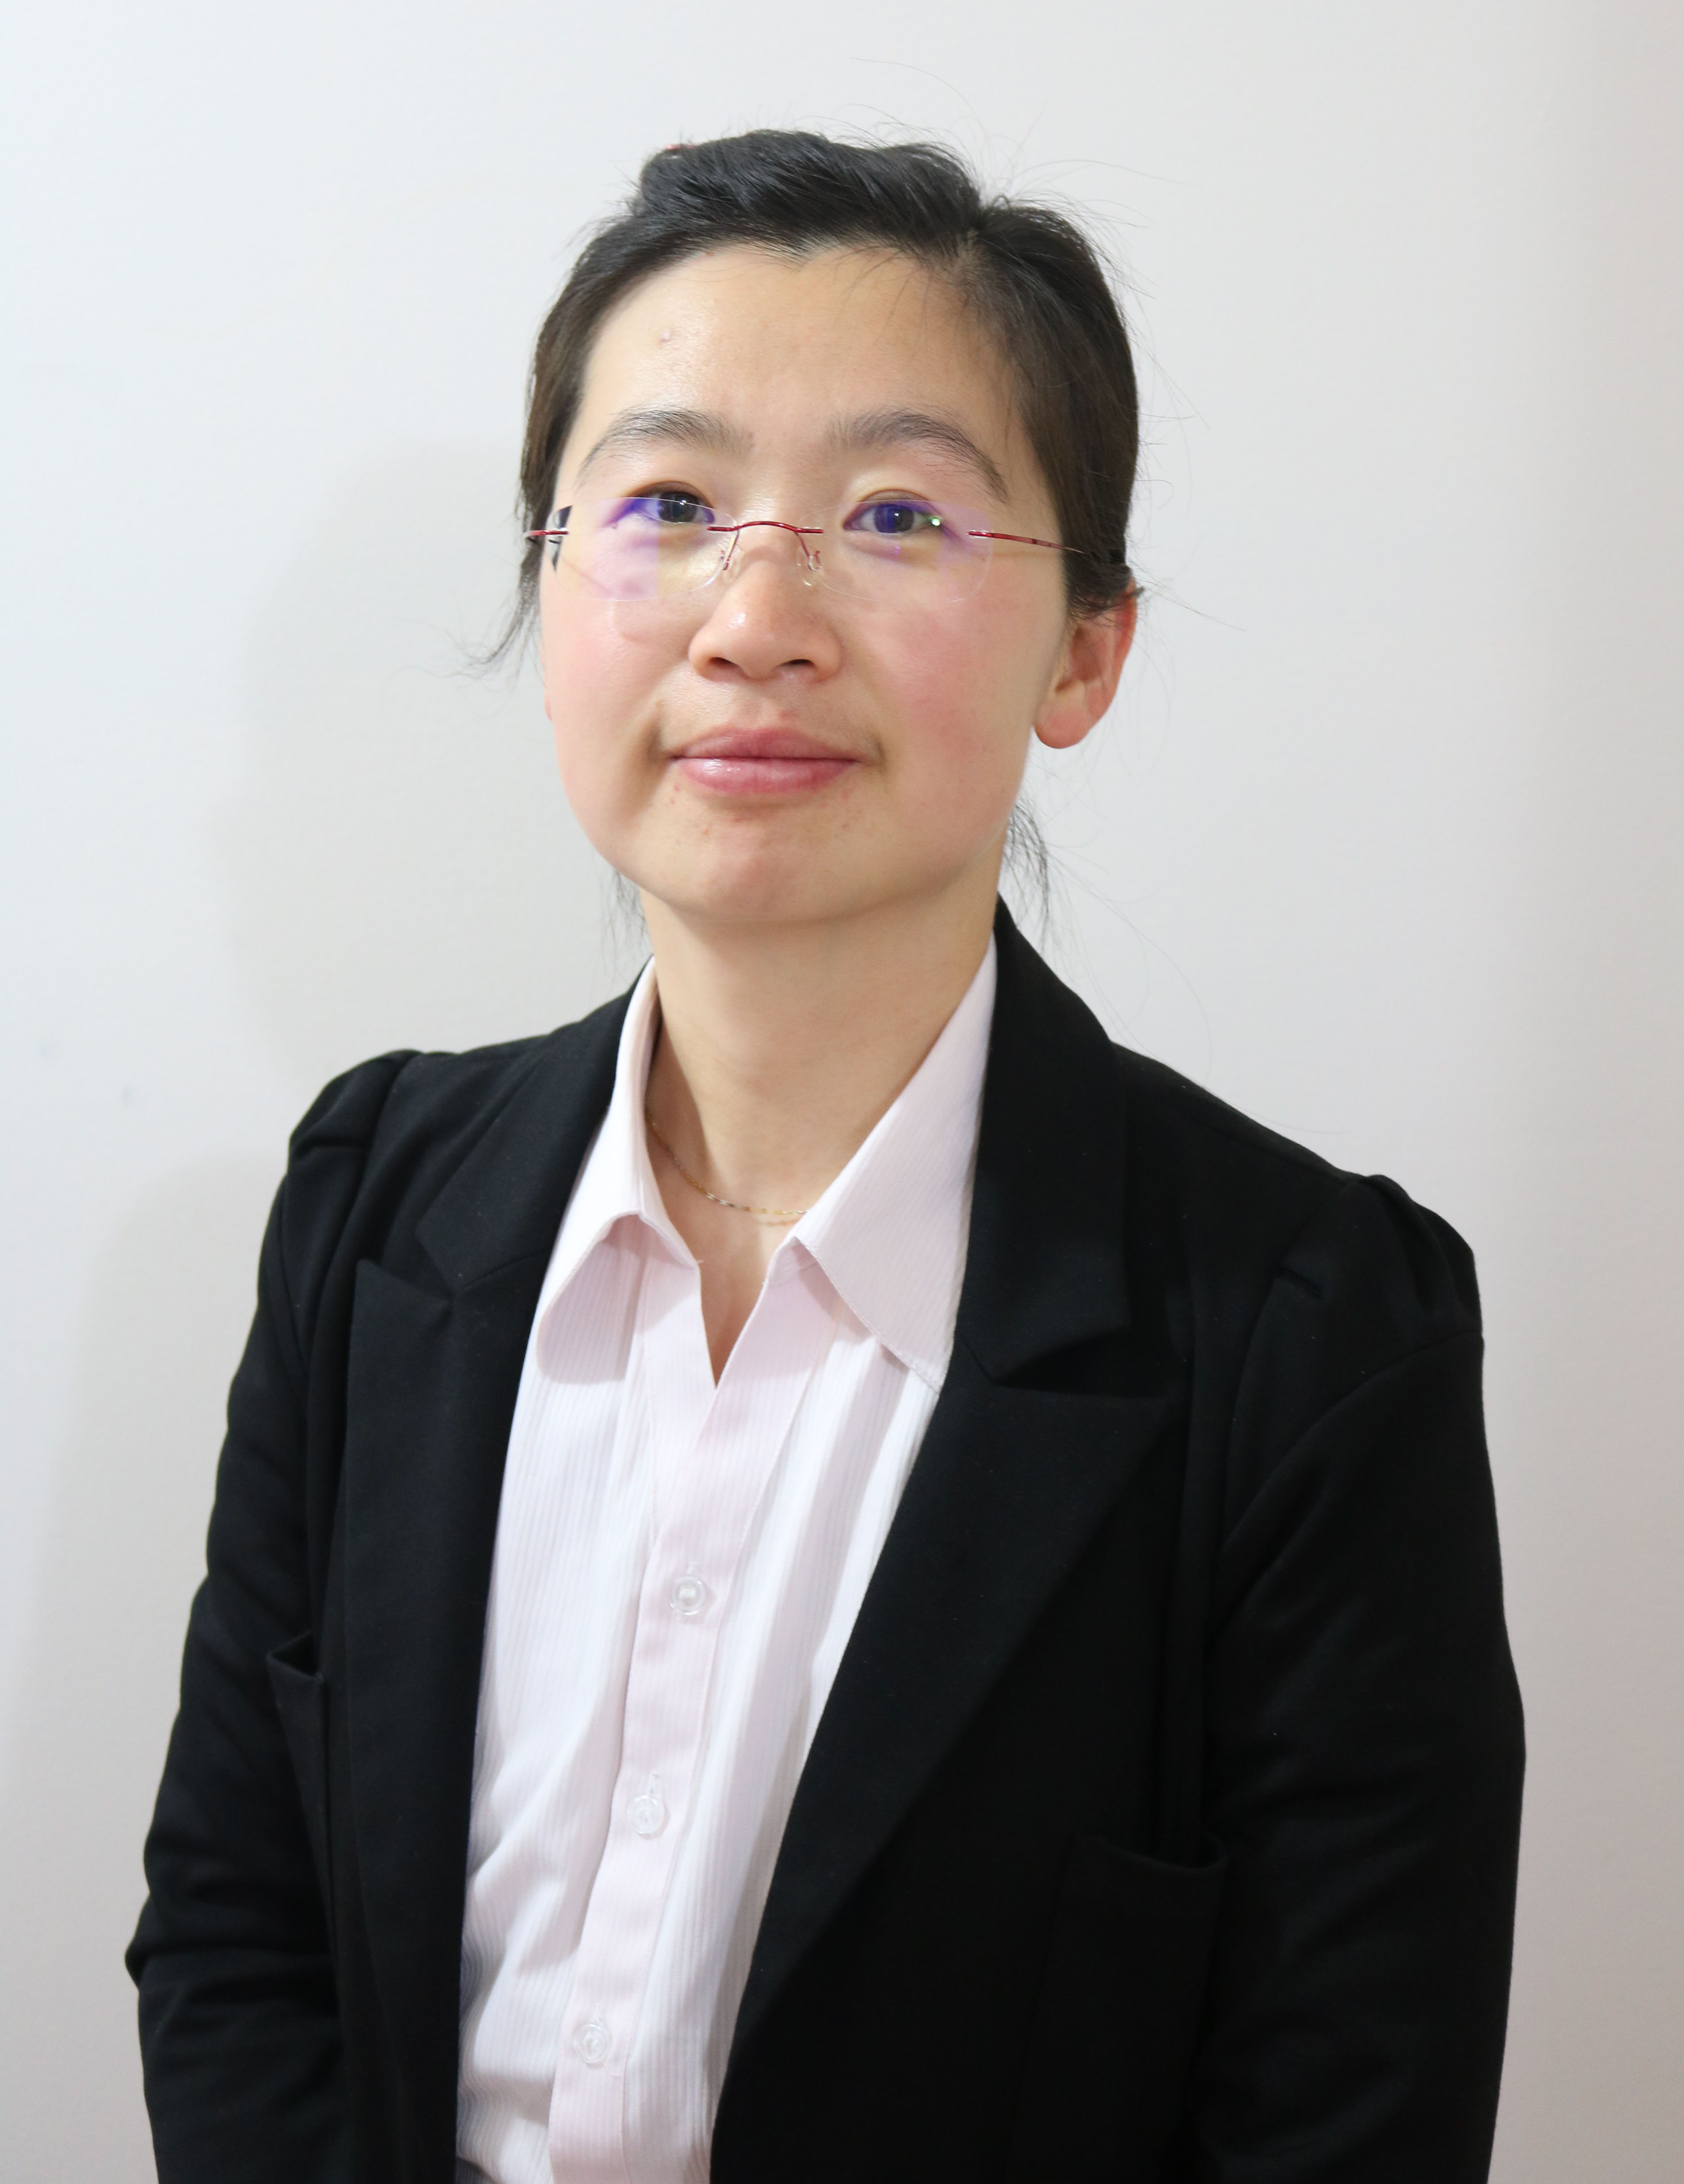 Dr. Yan (Vicky) Li